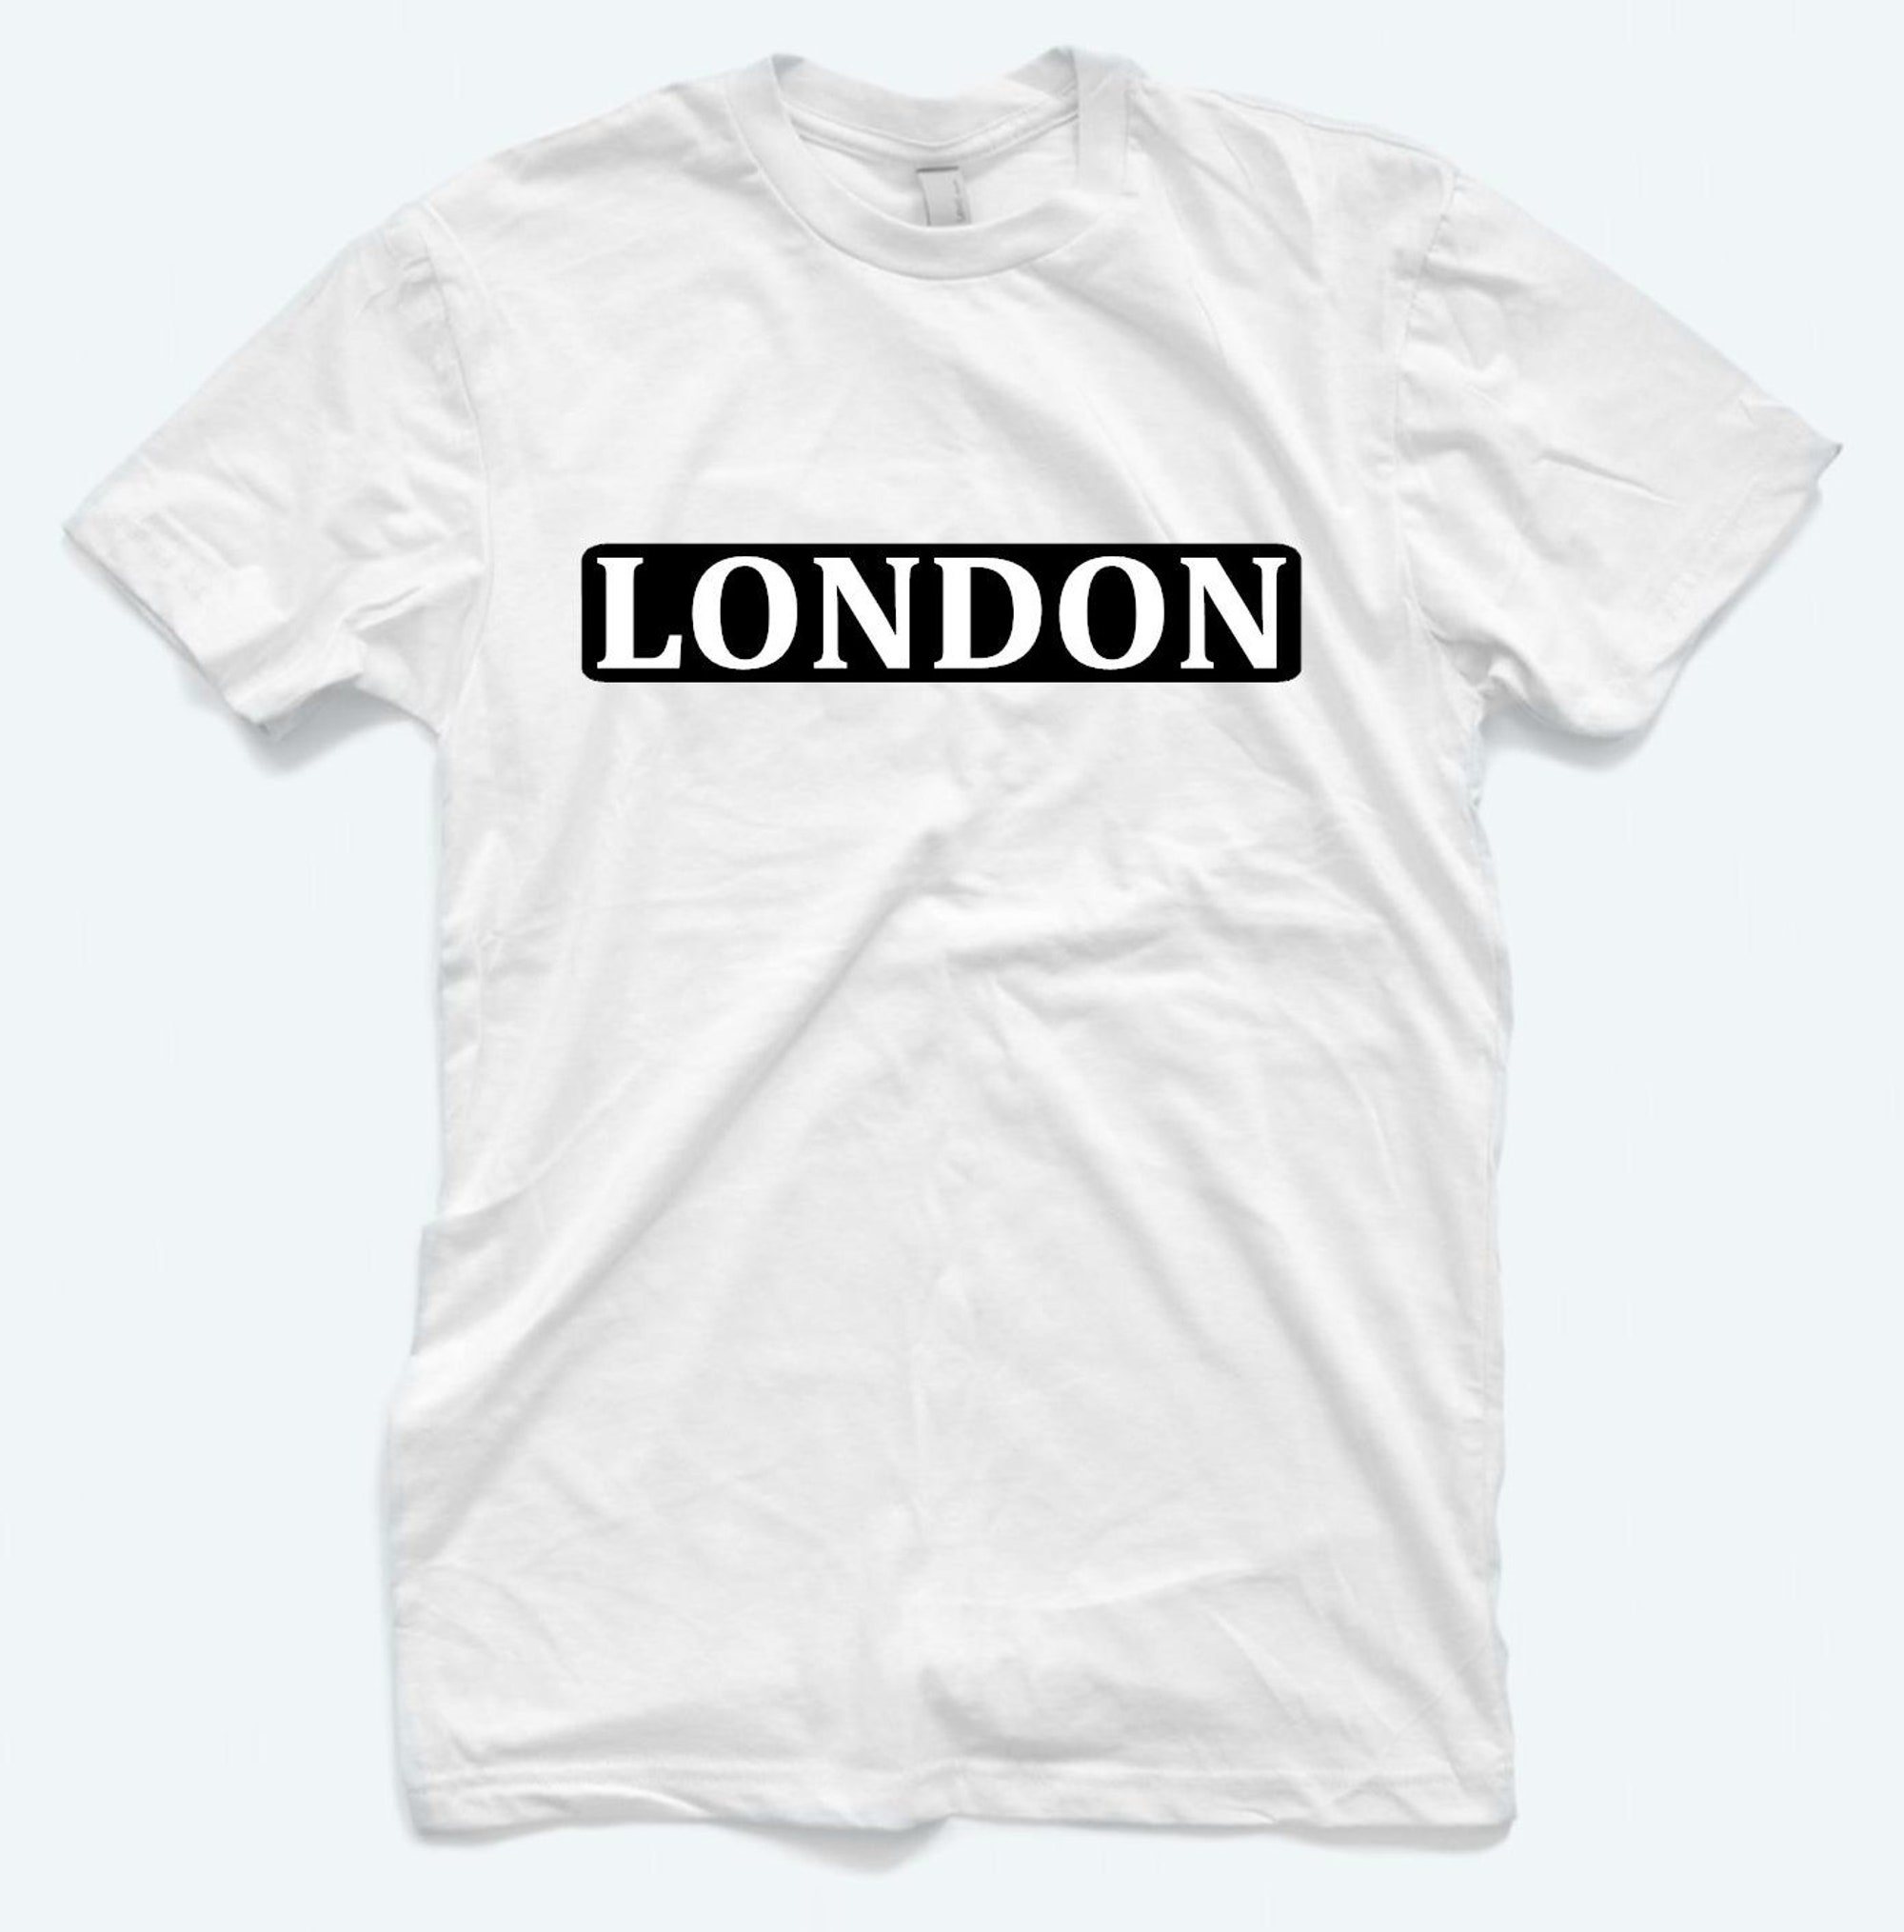 Discover London Tshirt, Unisex Shirts